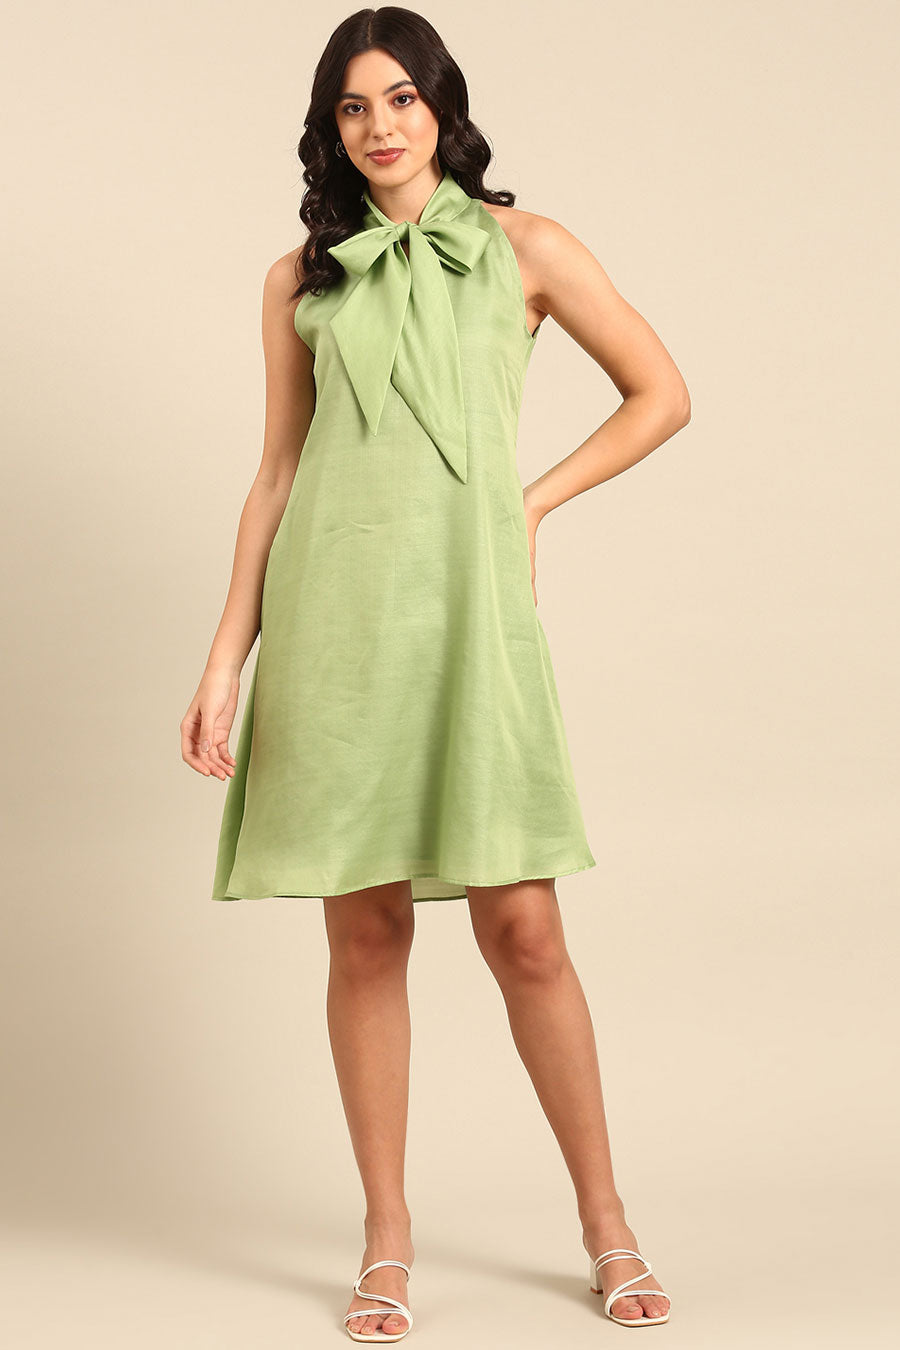 Green Bow Short Dress